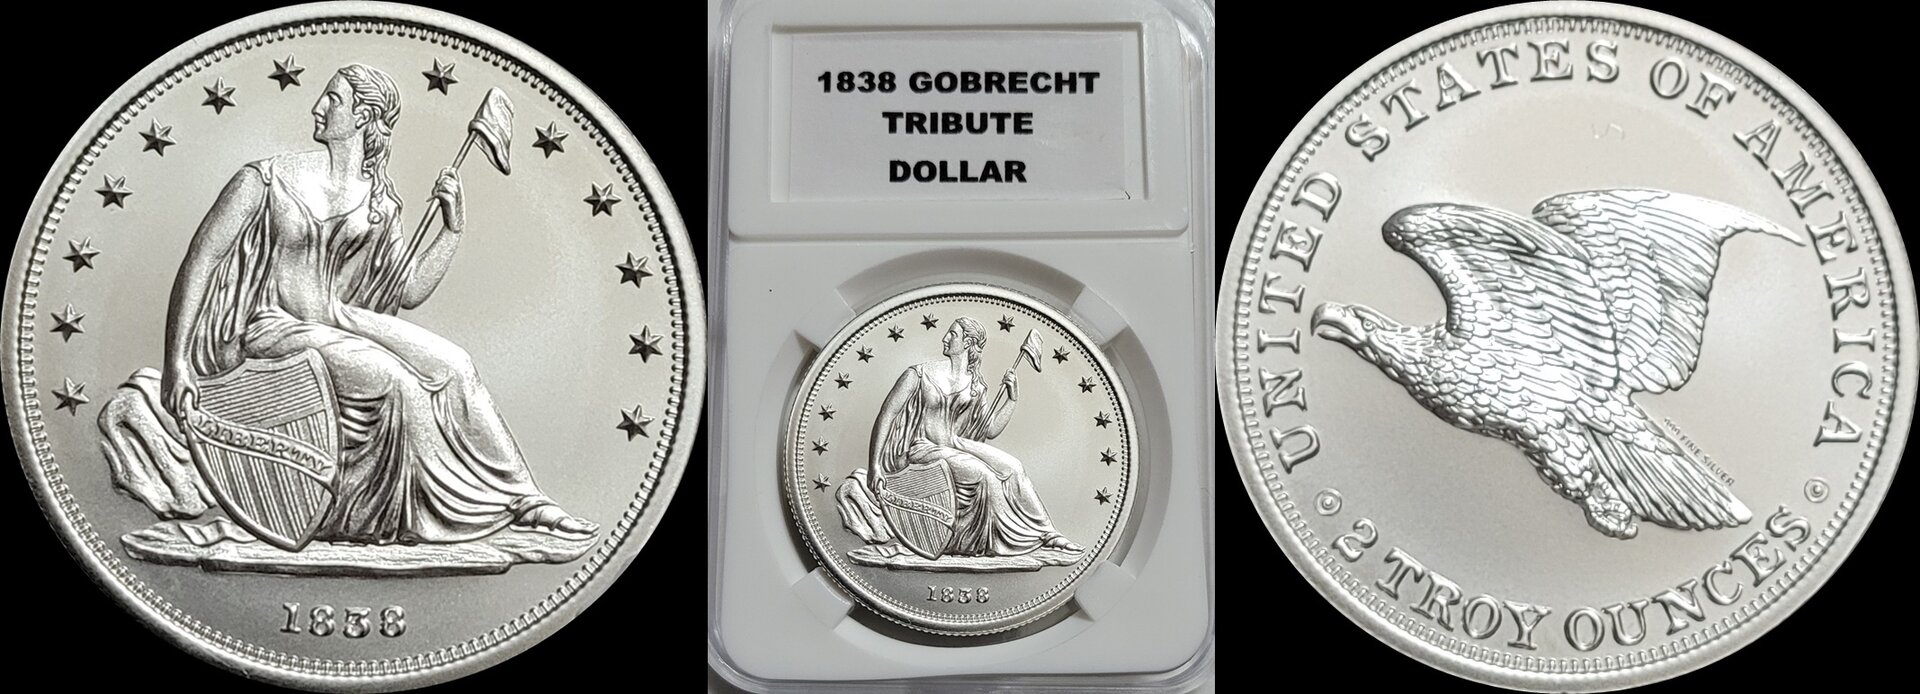 1838 Gobrecht Tribute Dollar 1a-horz.jpg